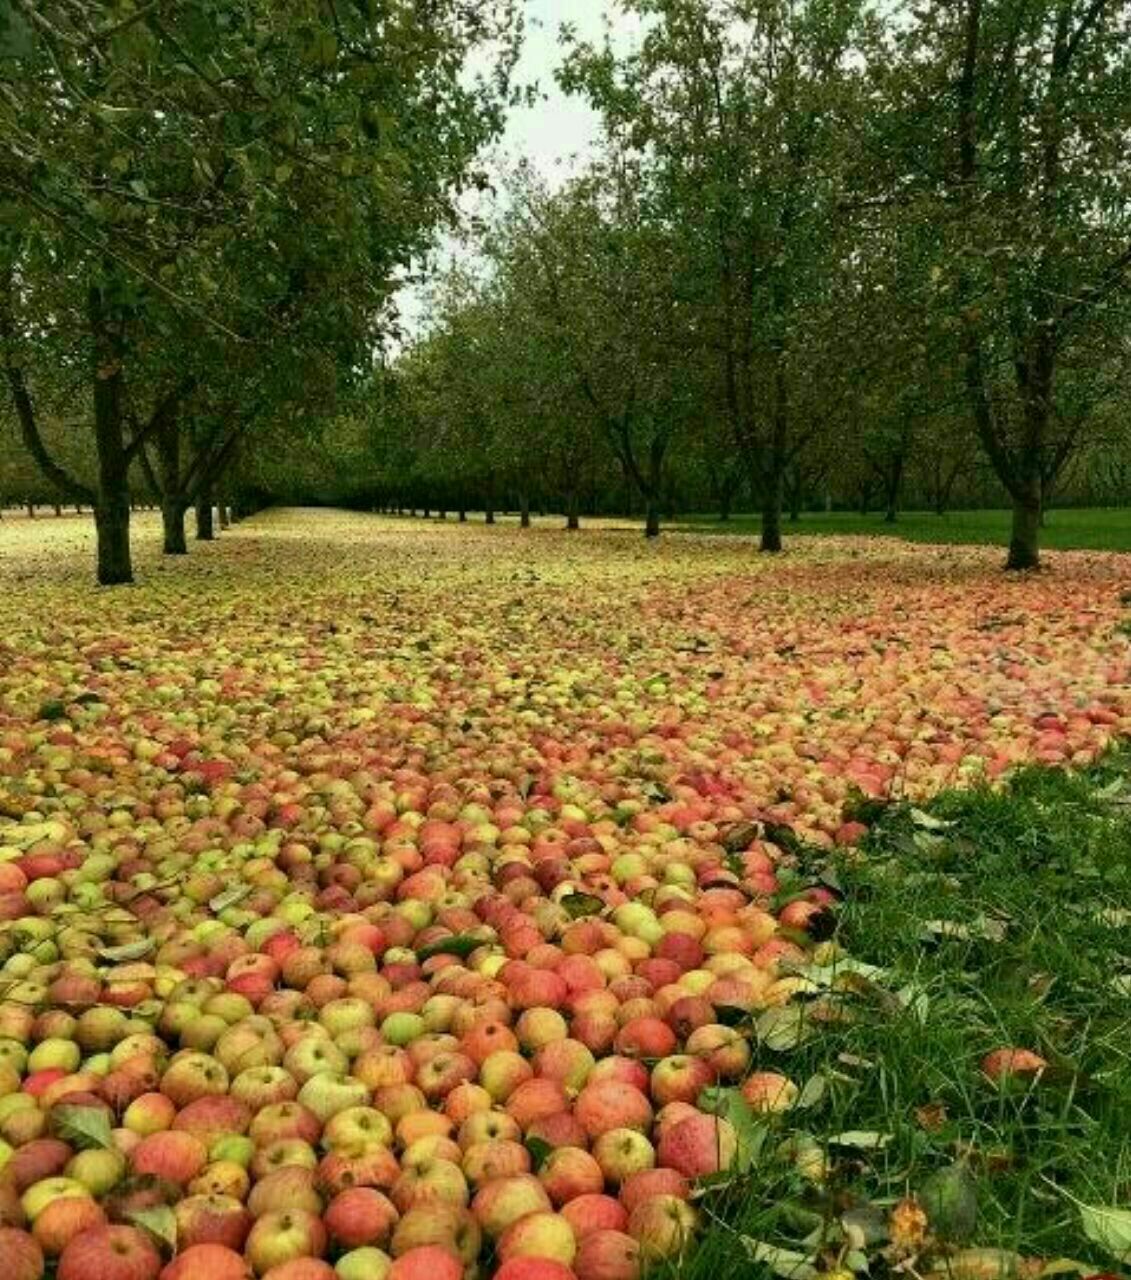 خشکسالی، ثمره احداث 3 هزار سد در کشور!/ ساخت بیش از 112 سد برای کاشت سیب، مرگ دریاچه ارومیه را رقم زد/ اقلیم کشور اسیر پروژه های مهندسی نشده وزارت نیرو